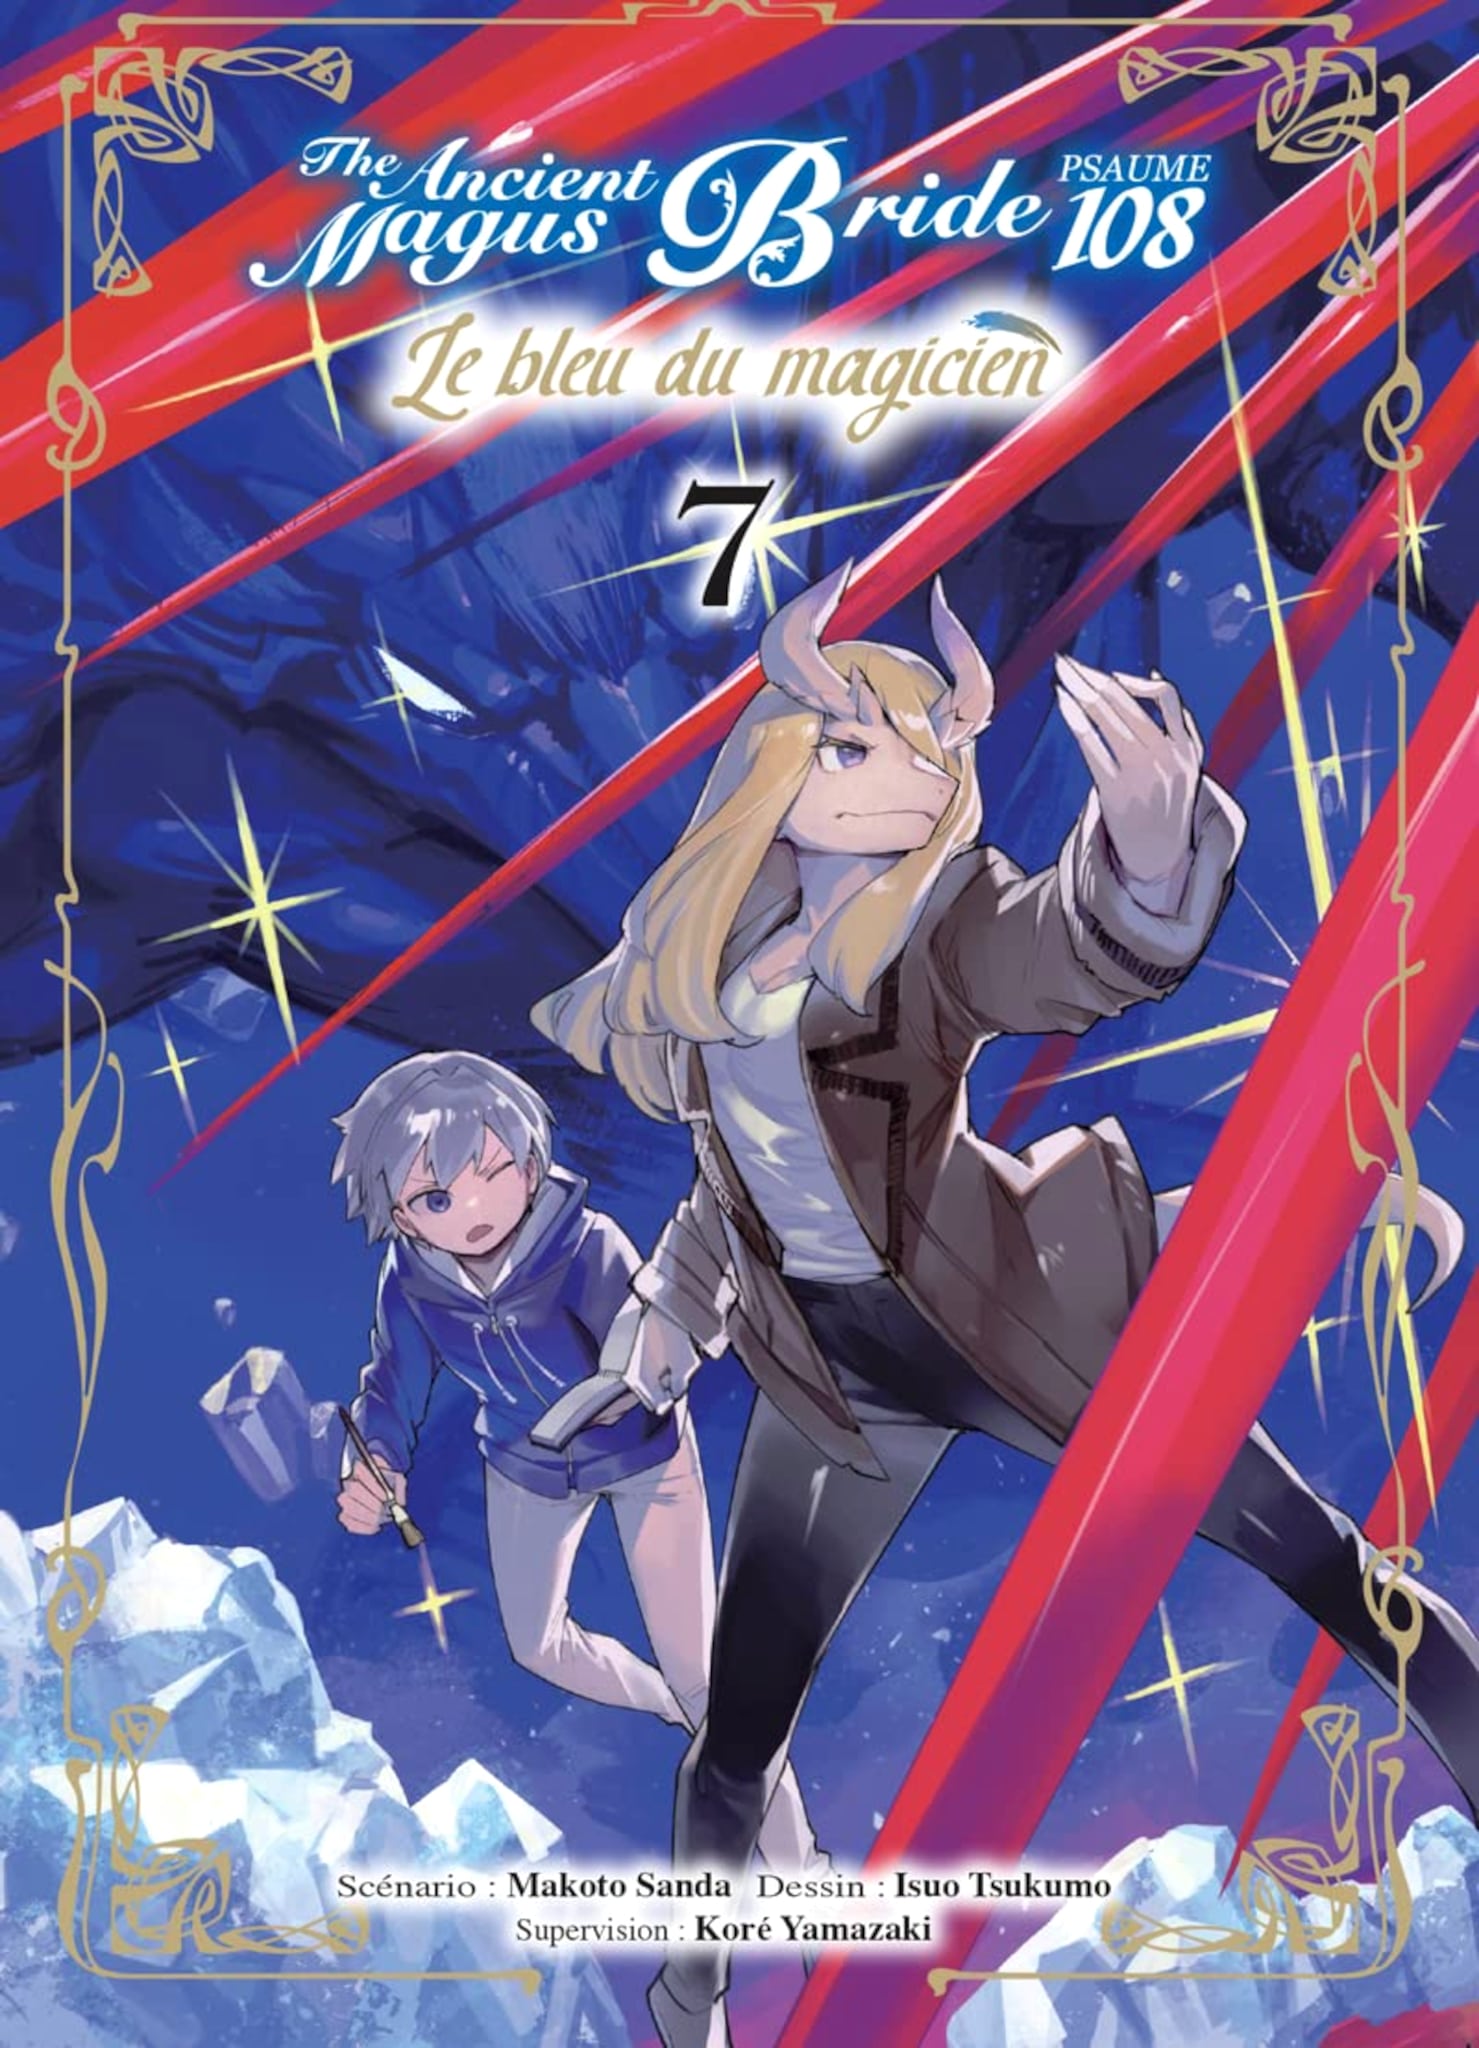 Tome 7 du manga The Ancient Magus Bride Psaume 108 : Le Bleu du Magicien